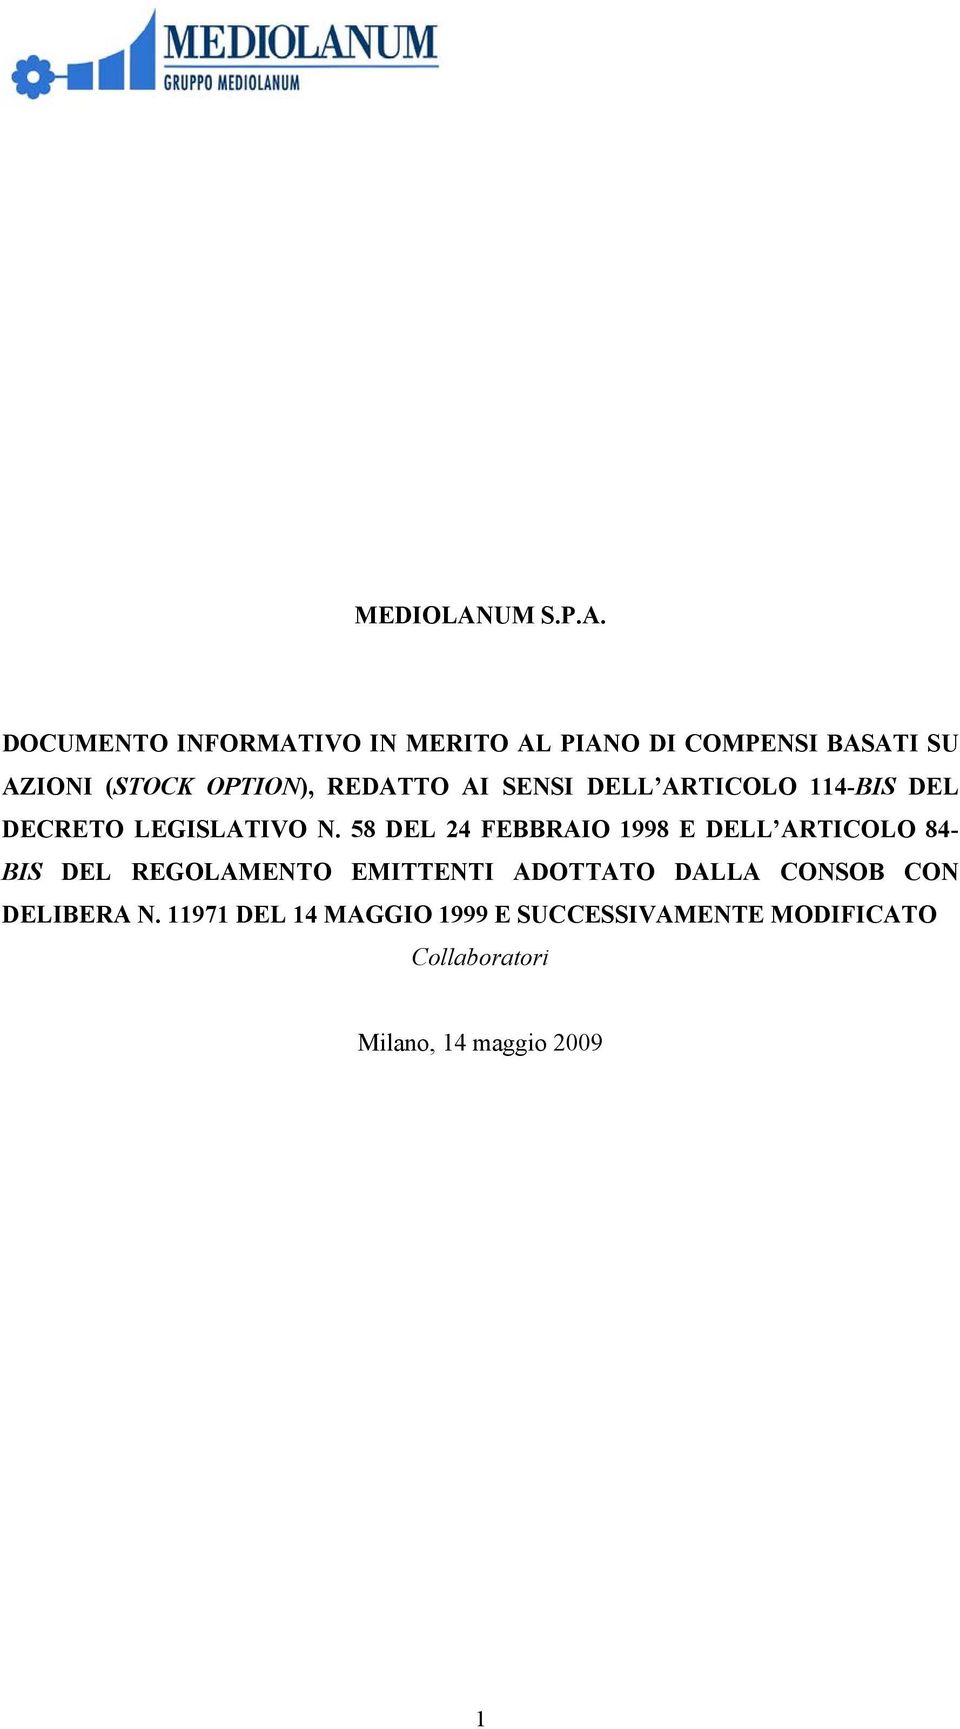 DOCUMENTO INFORMATIVO IN MERITO AL PIANO DI COMPENSI BASATI SU AZIONI (STOCK OPTION), REDATTO